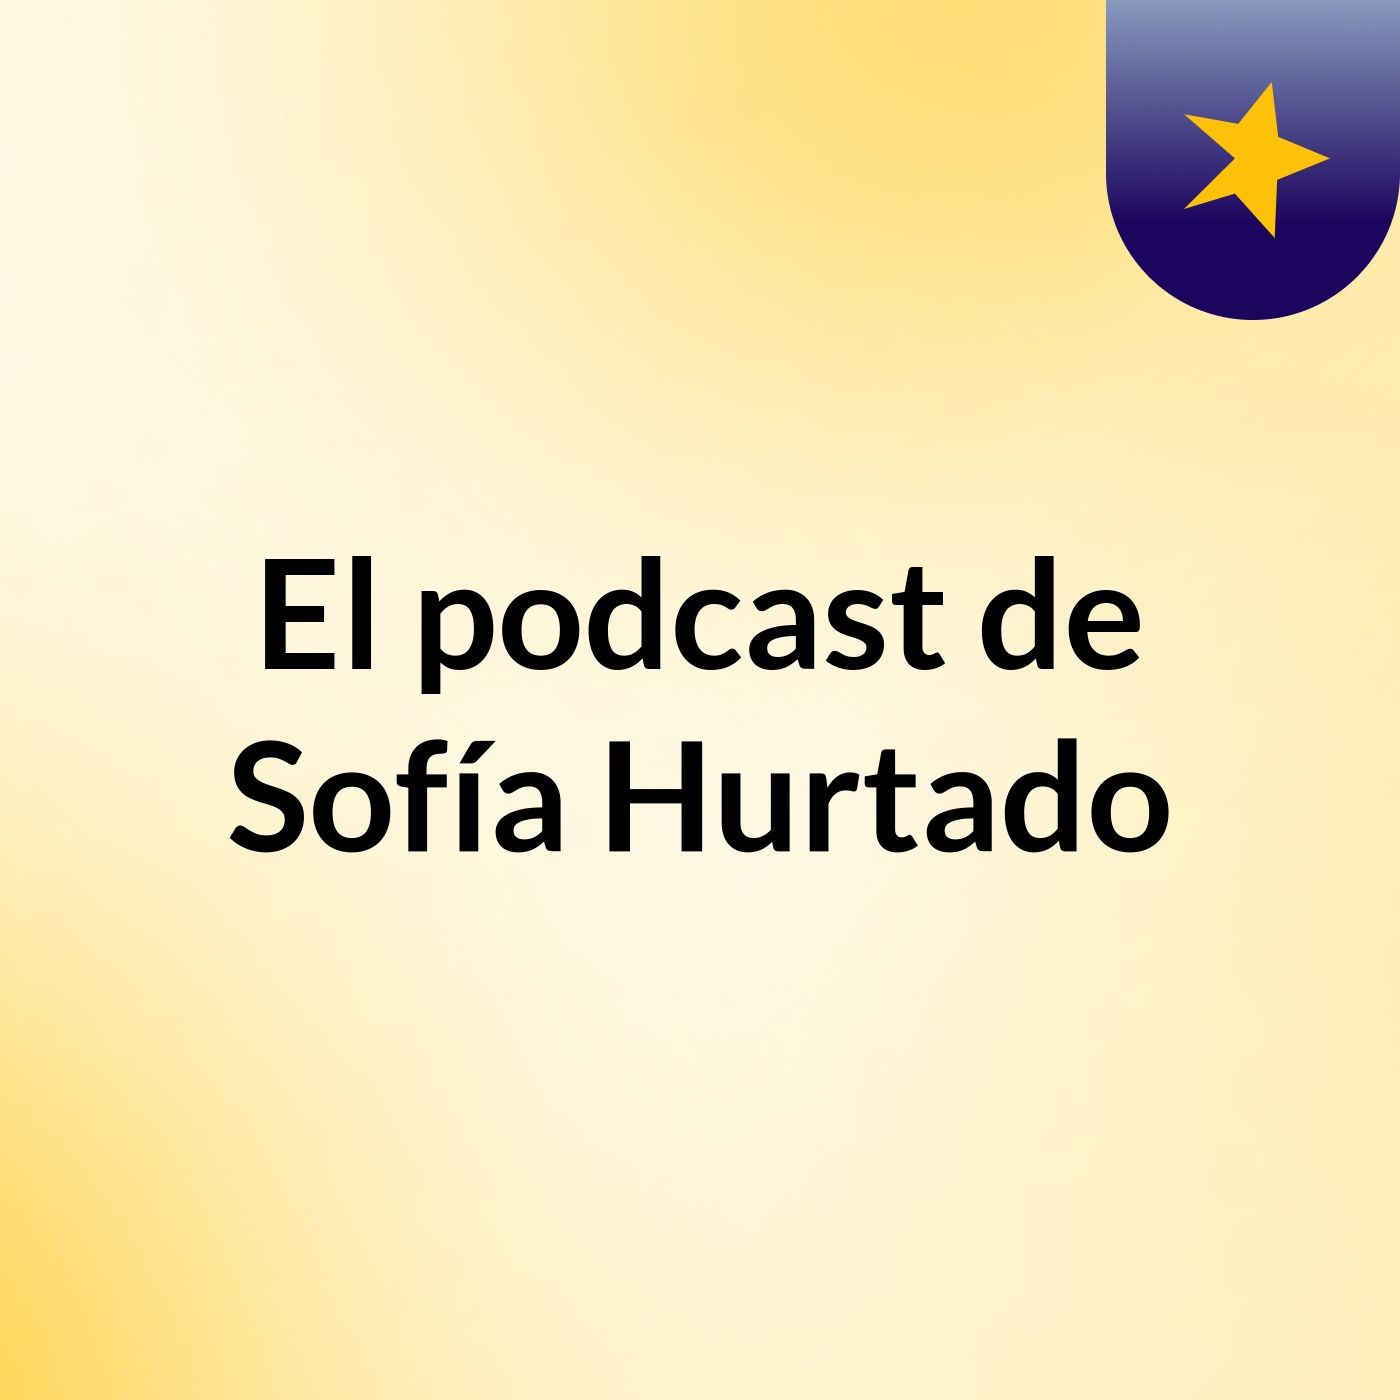 El podcast de Sofía Hurtado